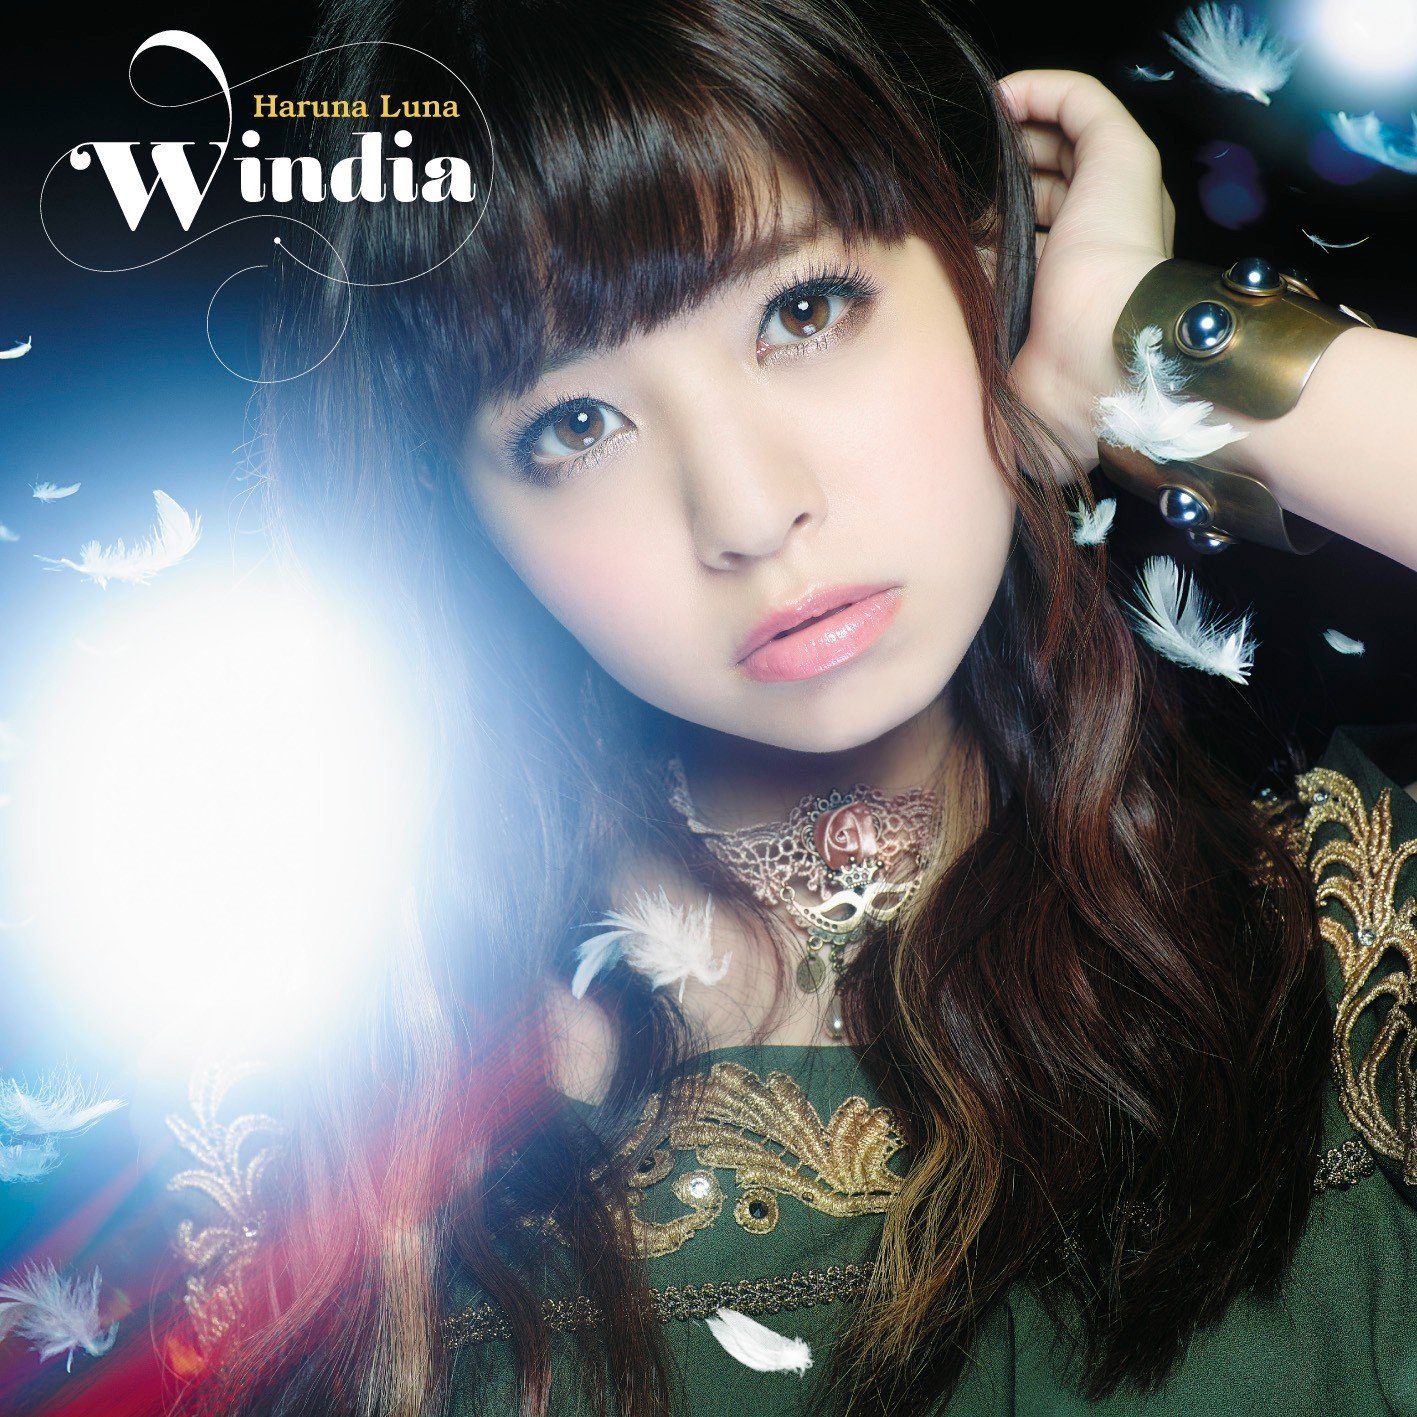 春奈るな (Luna Haruna) - Windia [Mora FLAC 24bit/96kHz]